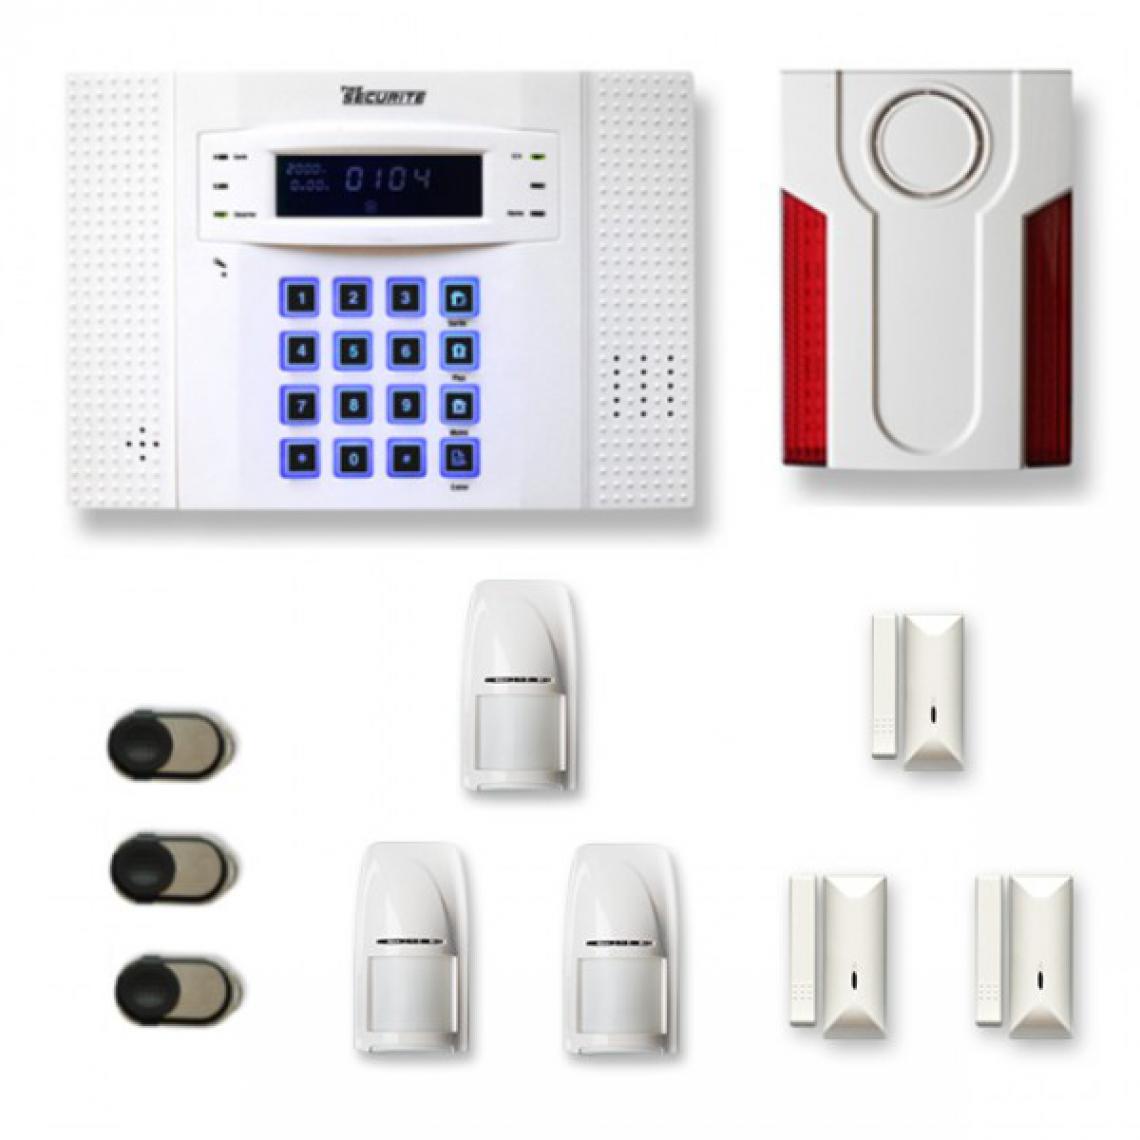 Tike Securite - Alarme maison sans fil DNB28 Compatible Box internet - Alarme connectée